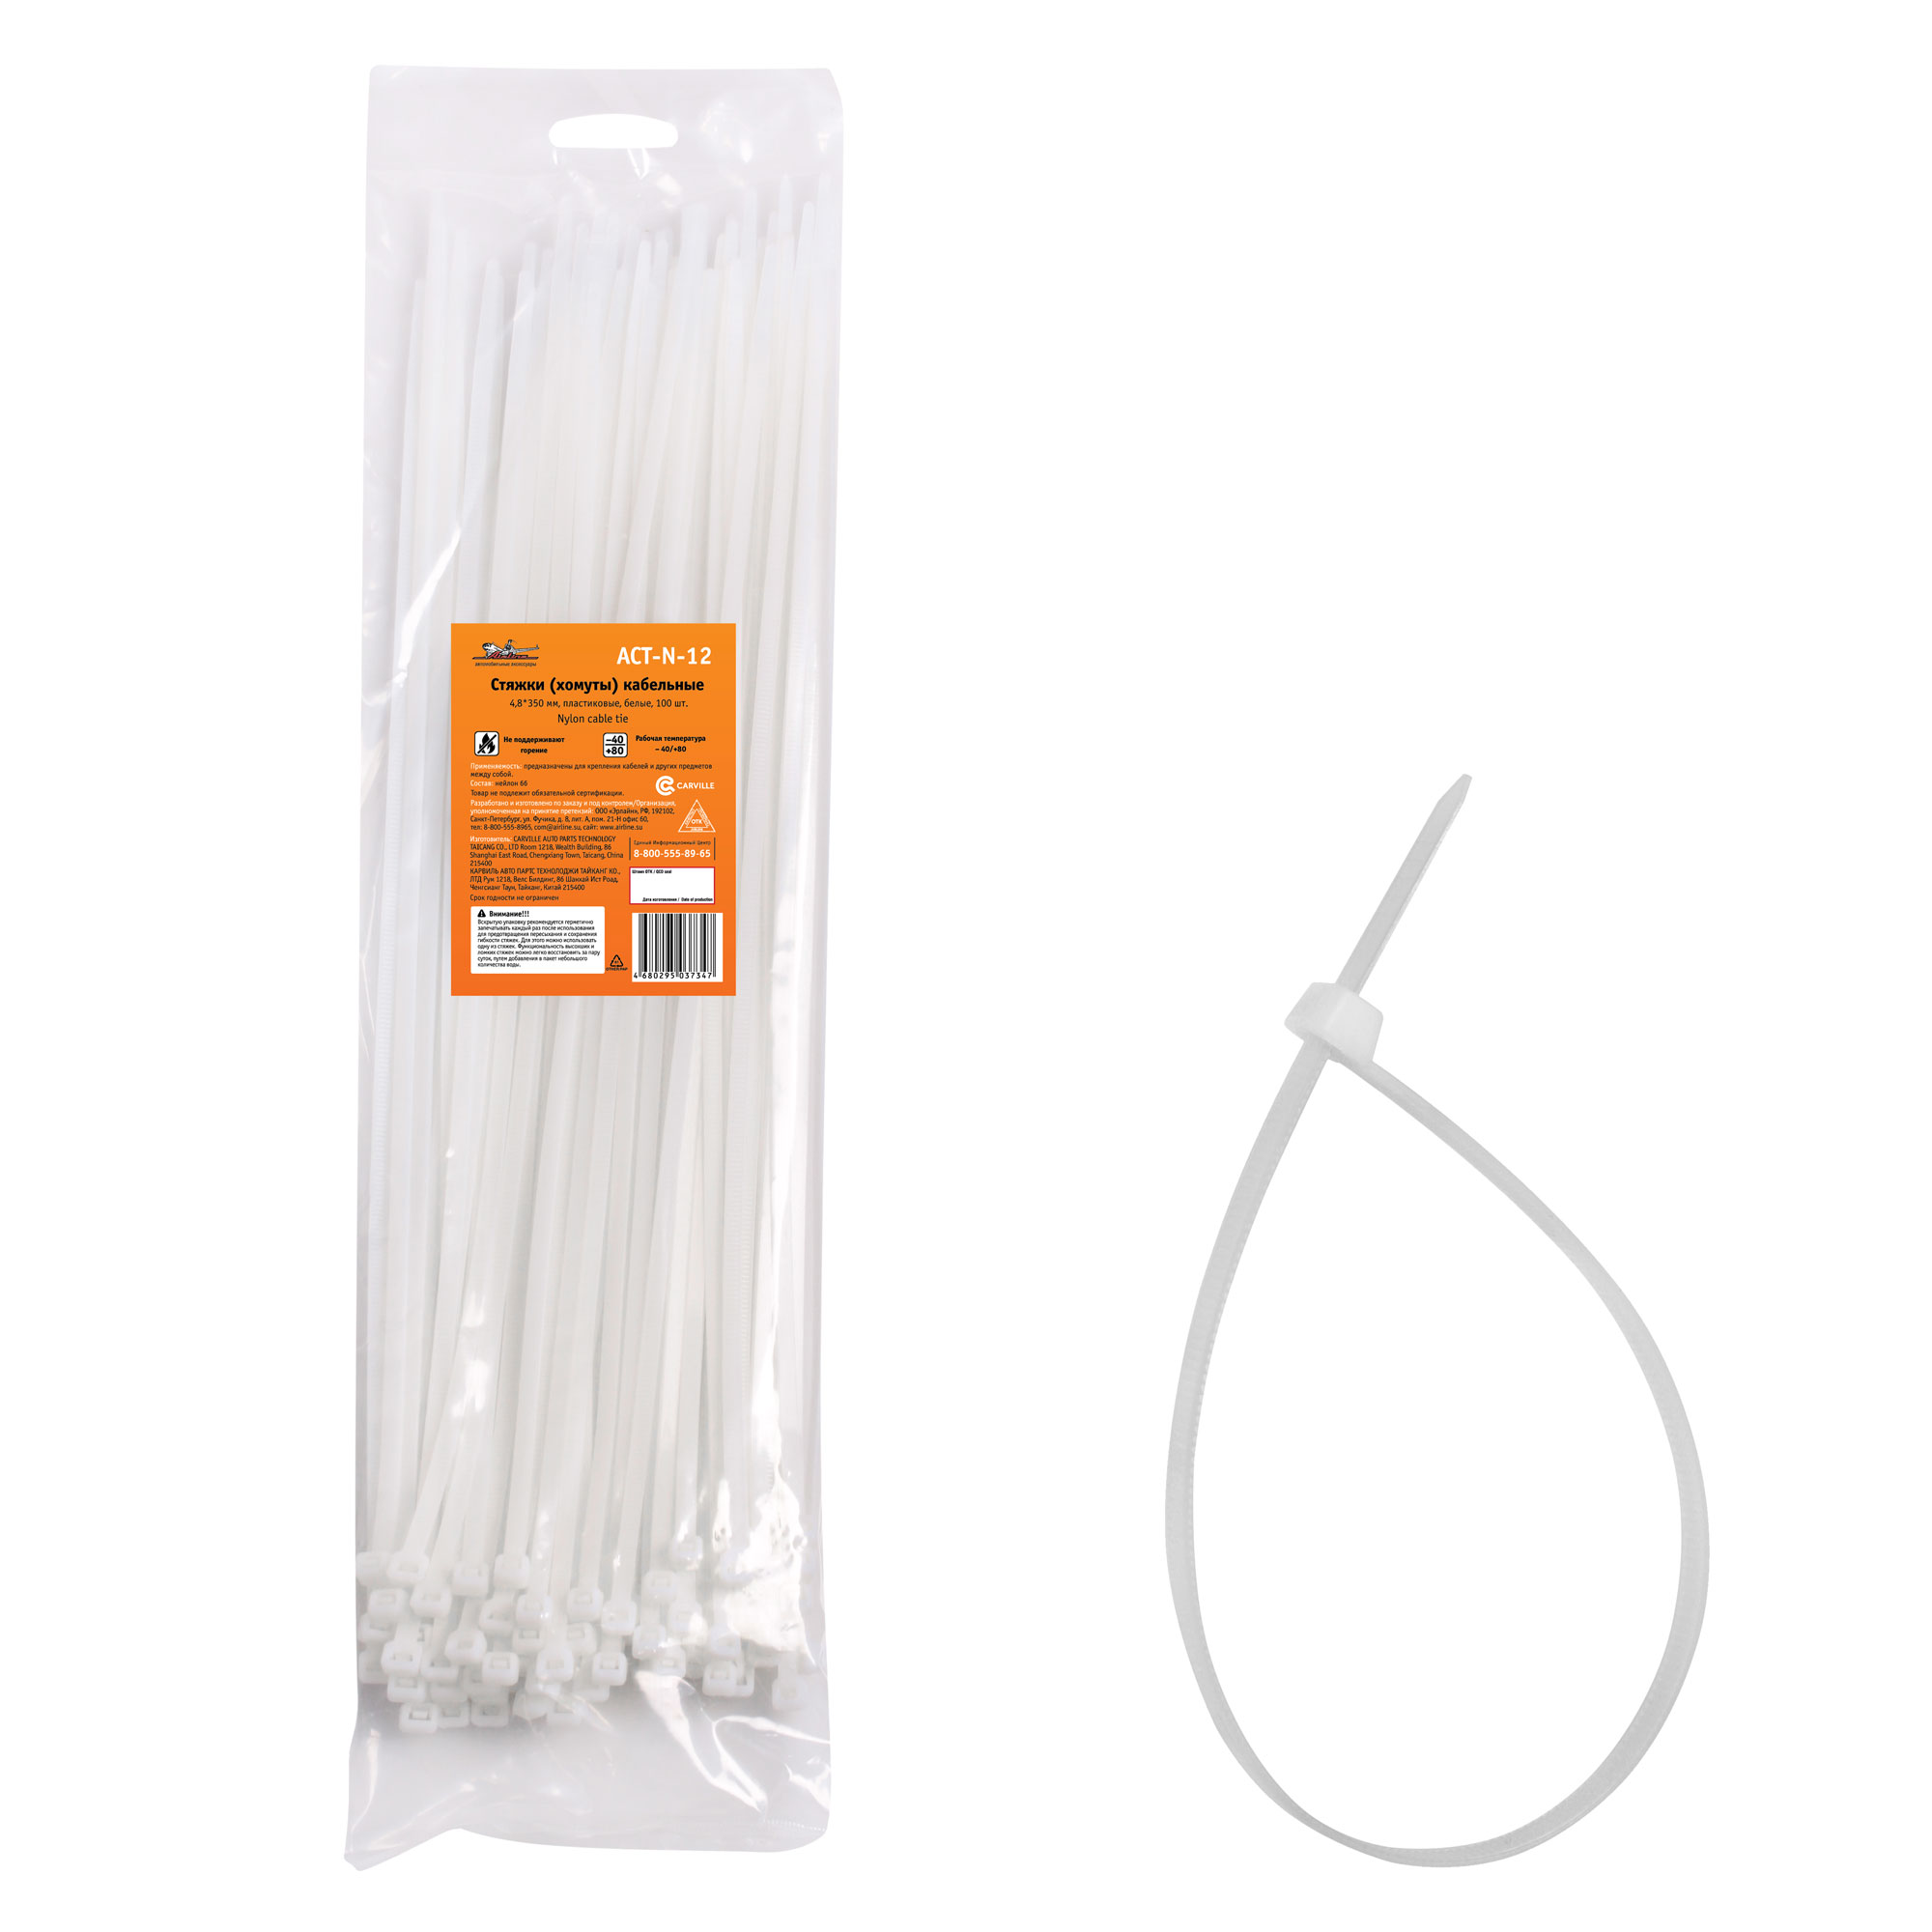 Стяжки (хомуты) кабельные 4,8*350 мм, пластиковые, белые, 100 шт. - AIRLINE ACT-N-12